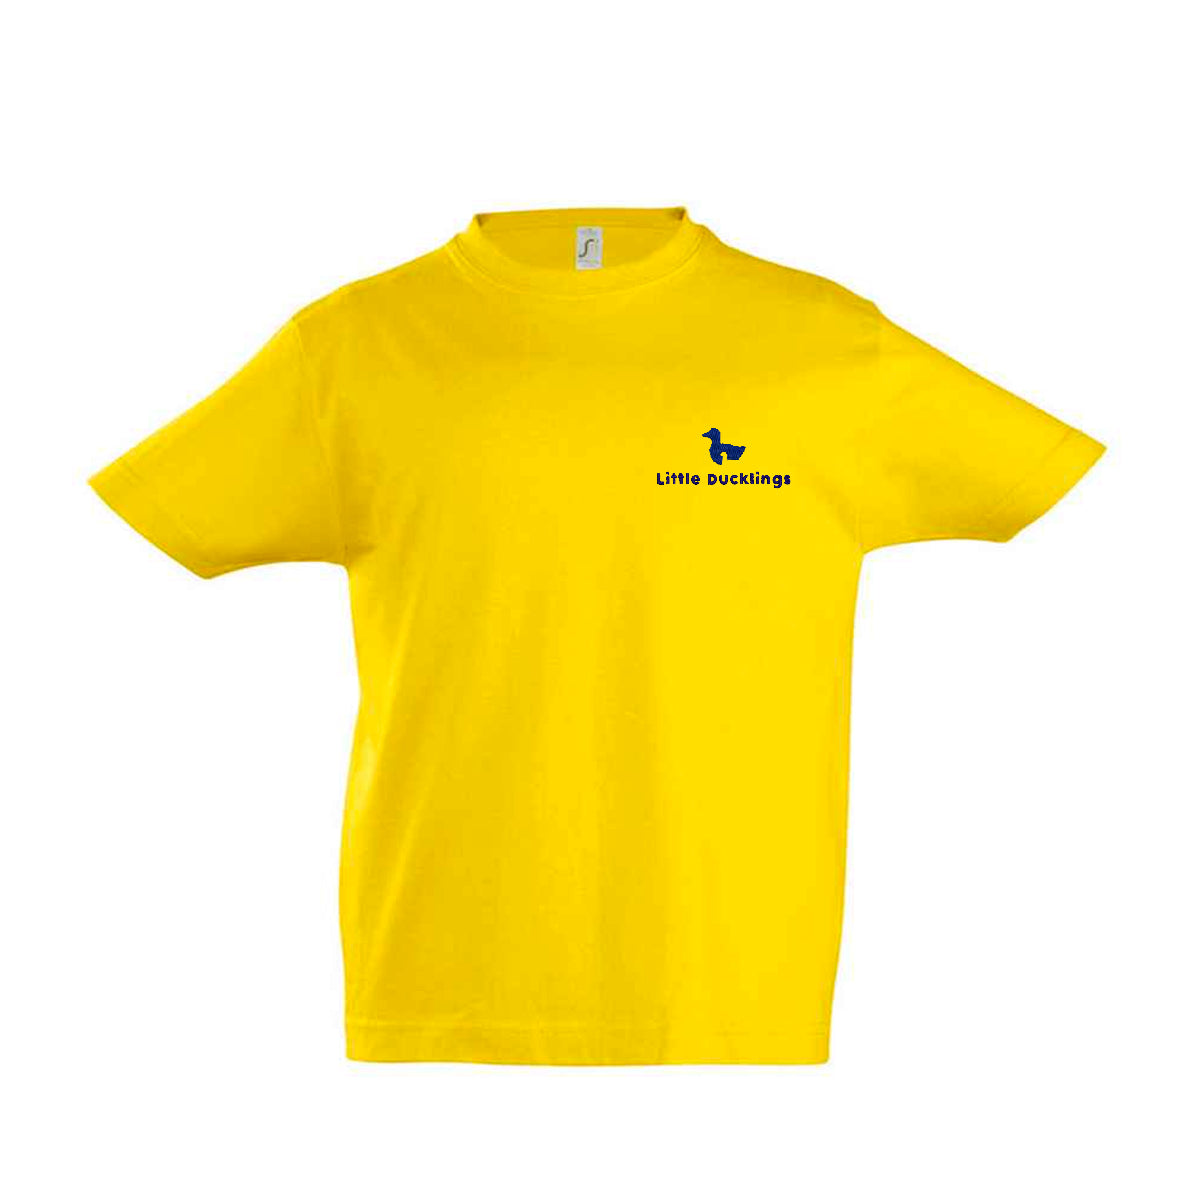 Little Ducklings Yellow T-Shirt Kids